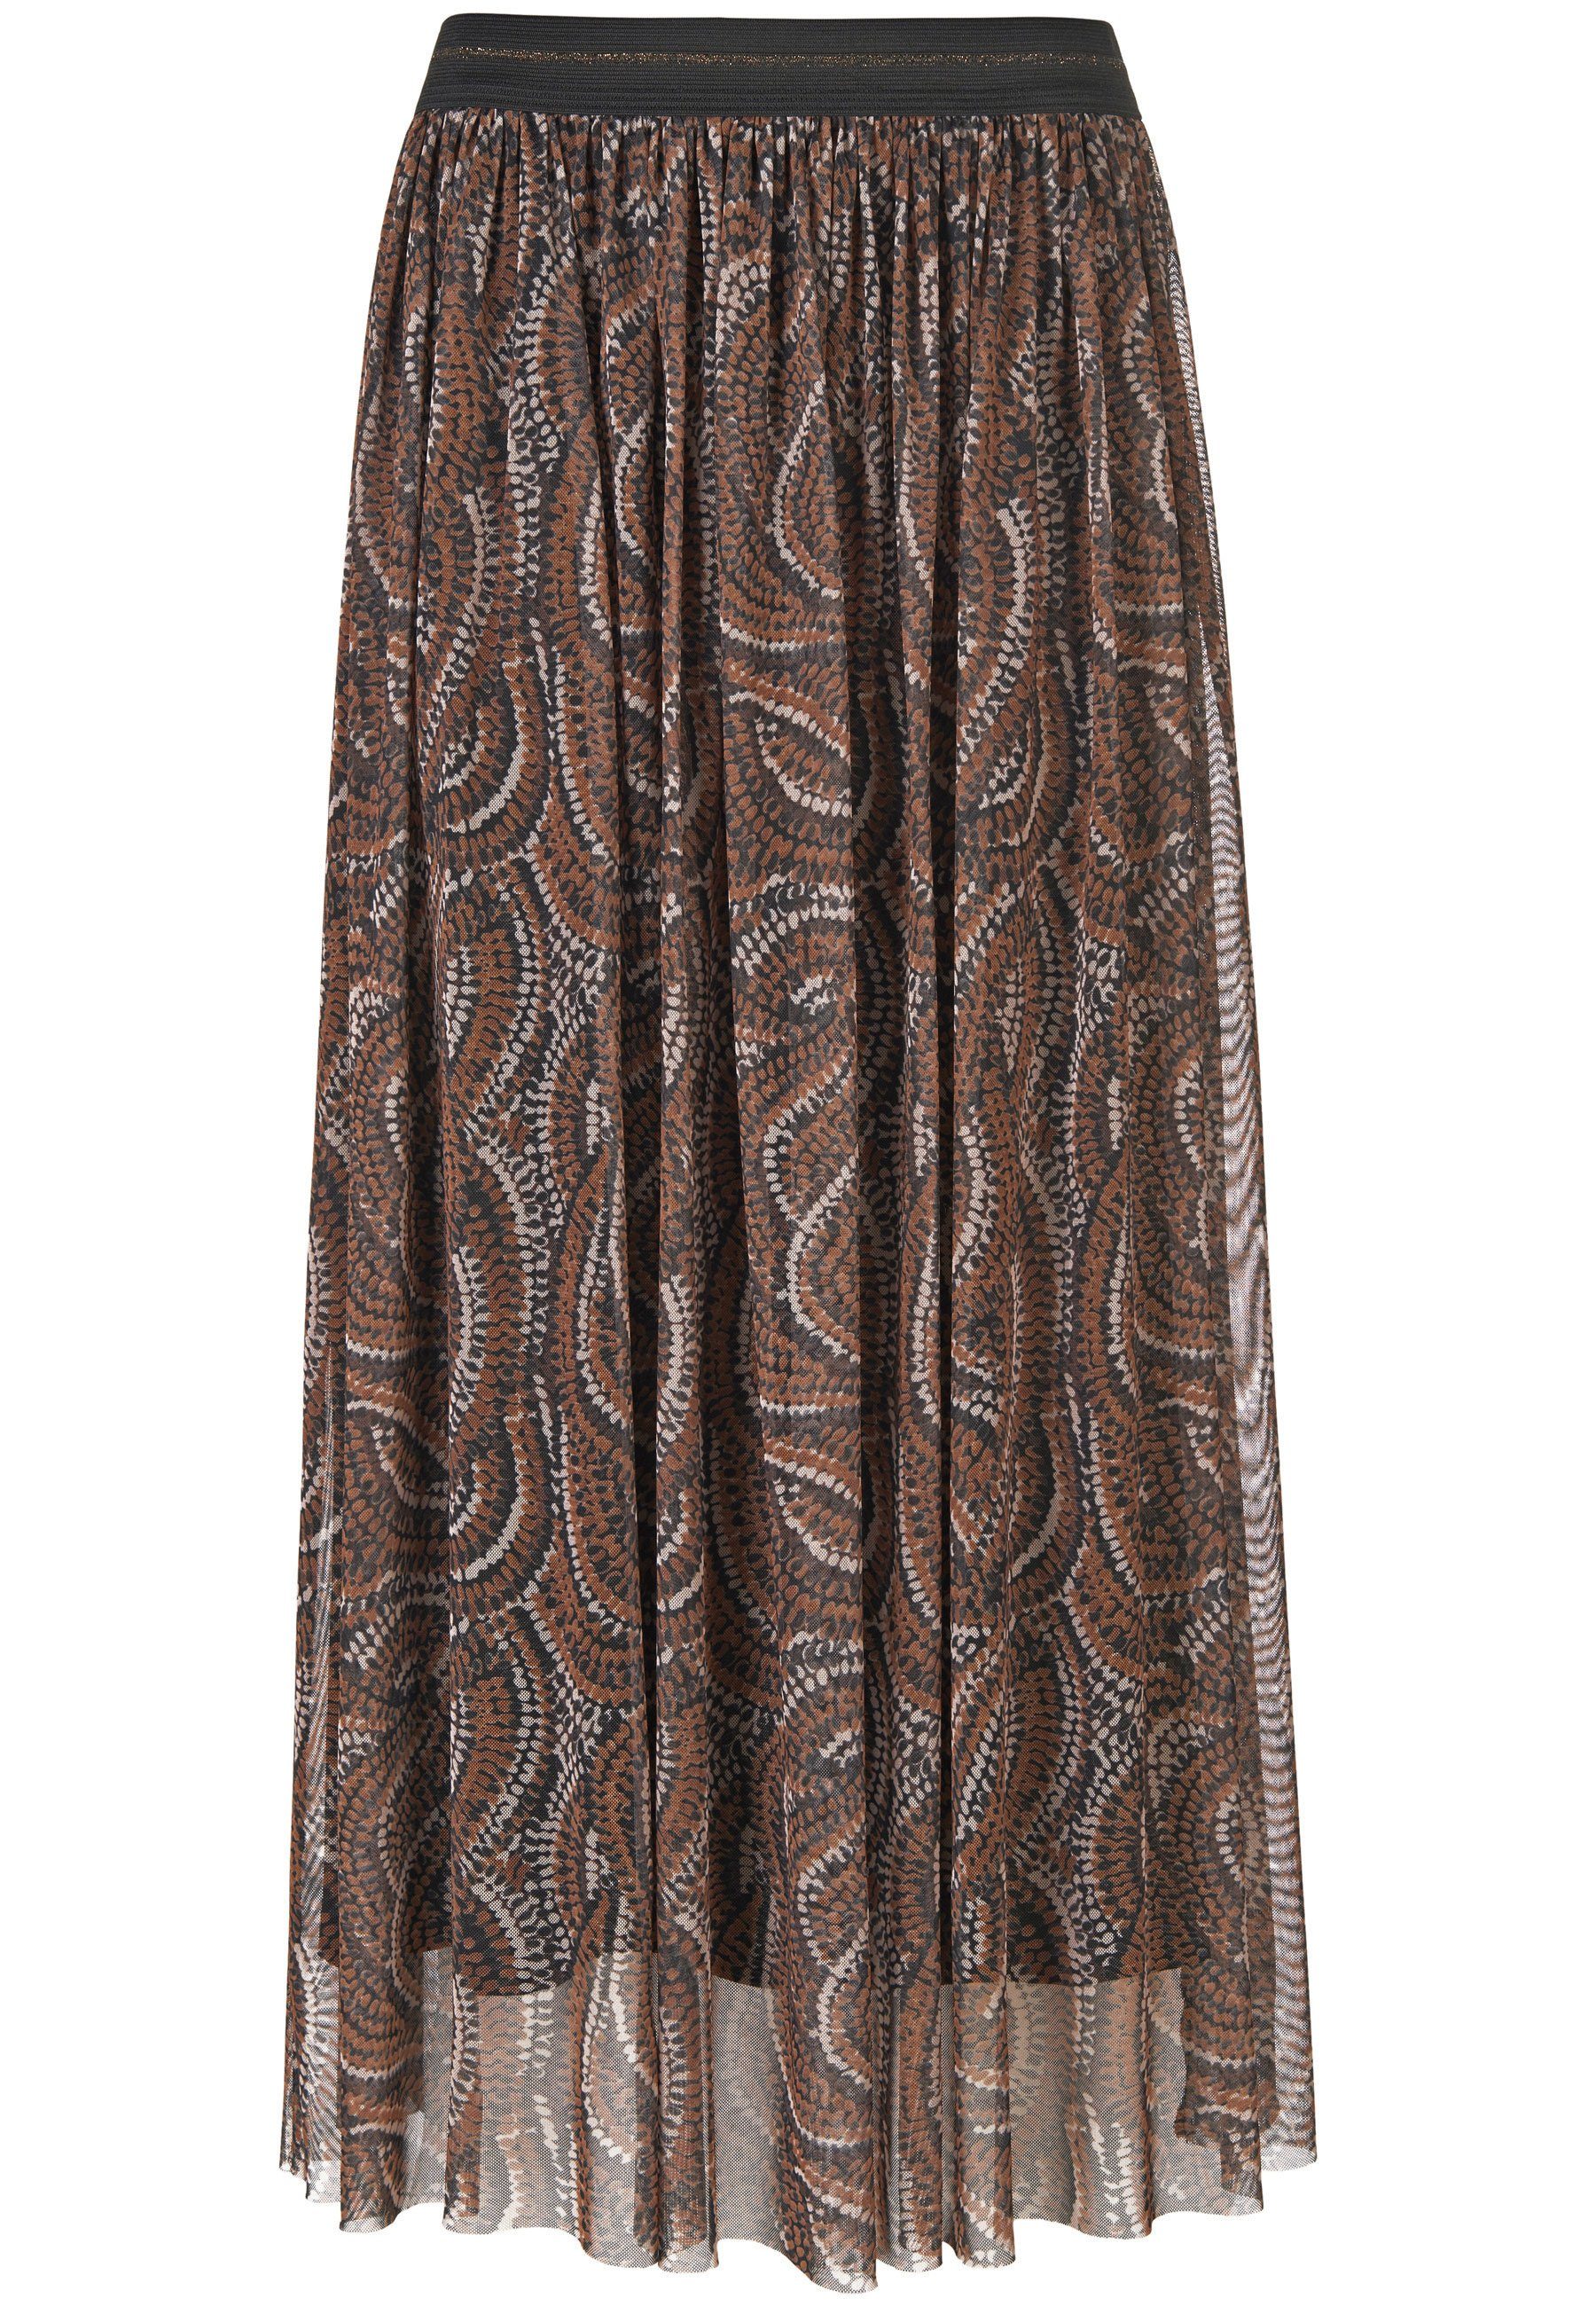 Hahn A-Linien-Rock Peter modernem Skirt mit Design